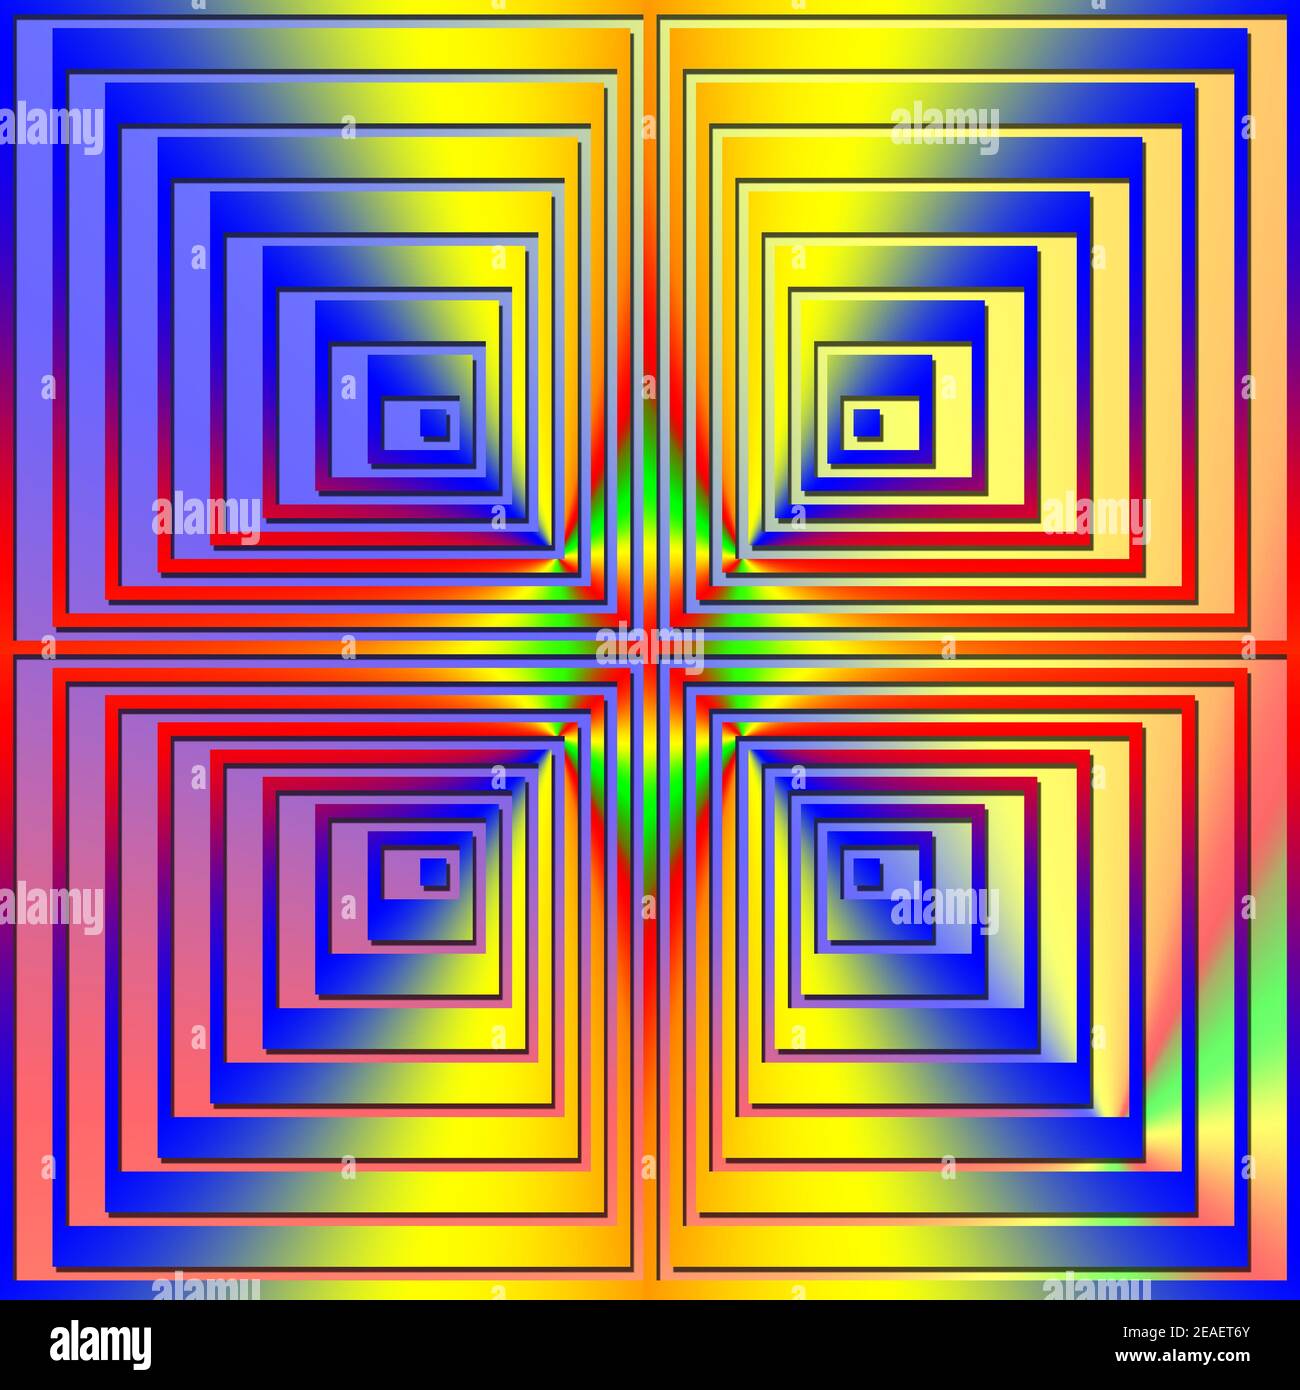 Illustrazione grafica 3D - immagine a stella da illusione ottica Quadrati in 3D di colore arcobaleno Foto Stock